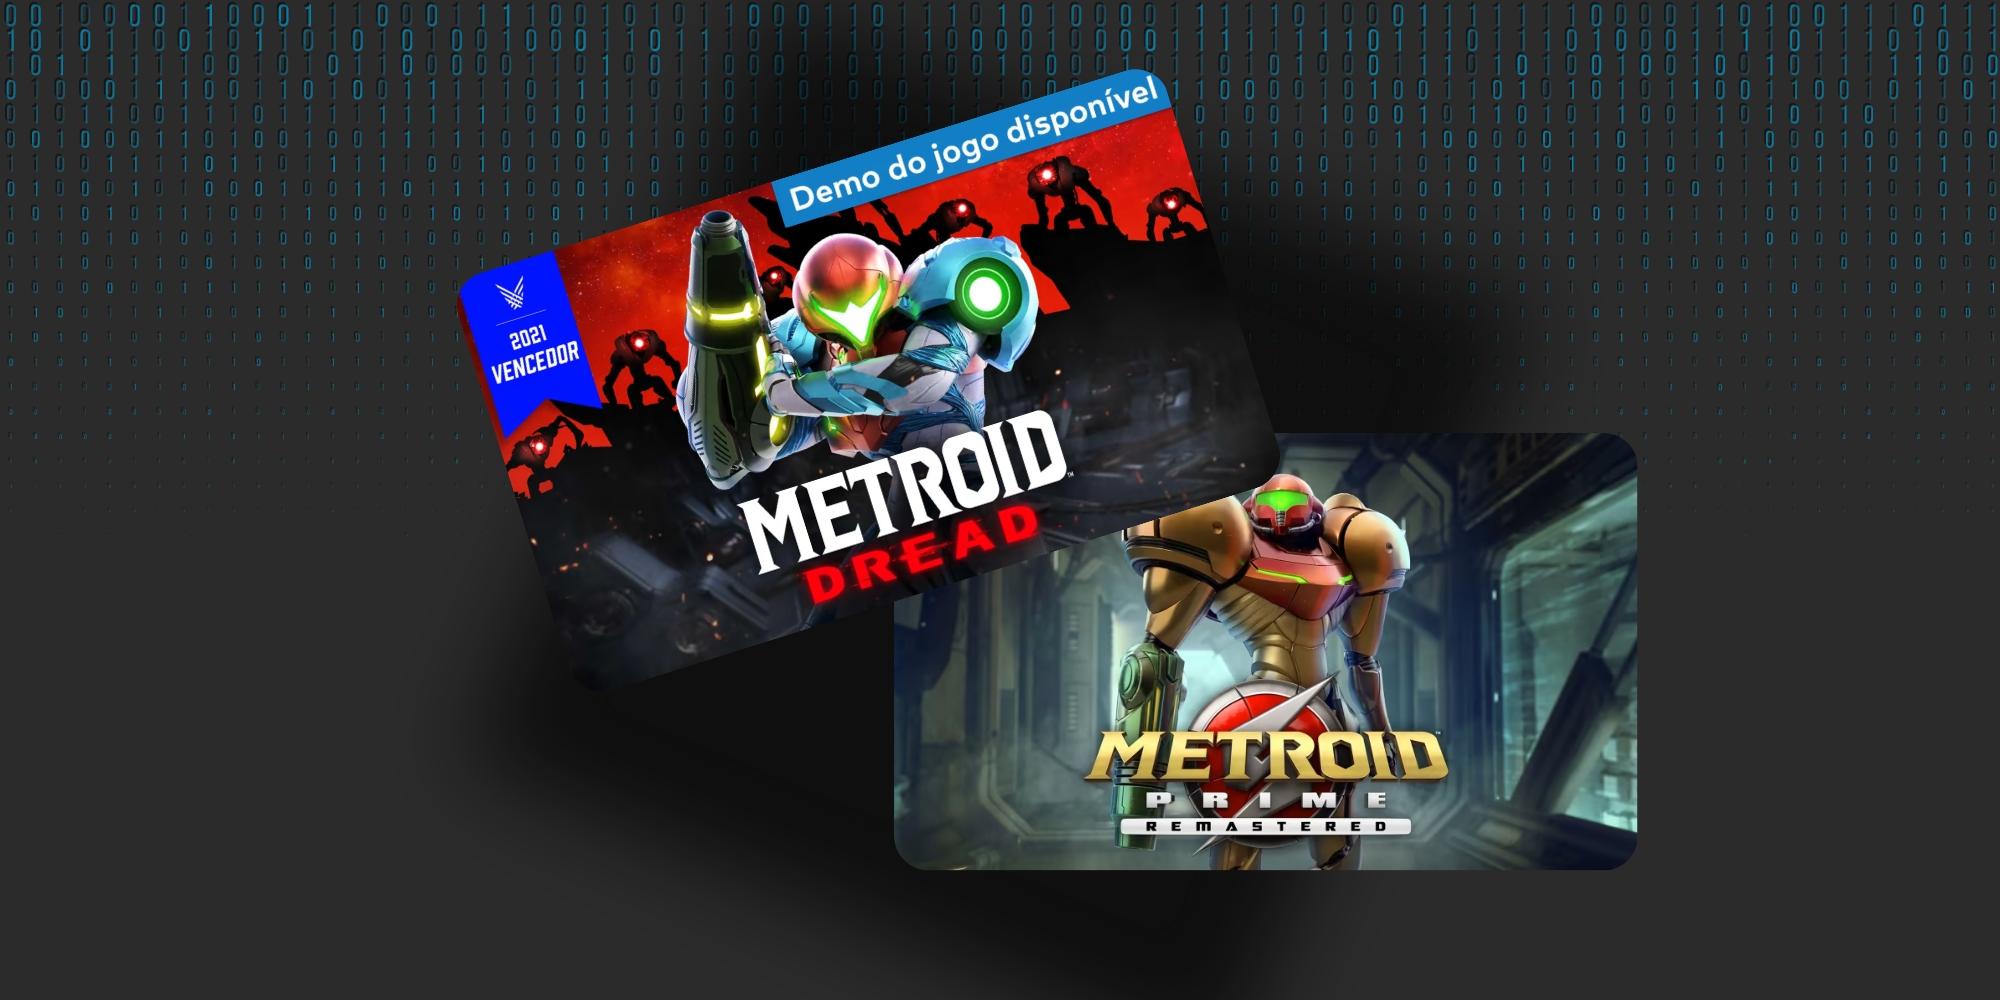 Cover Image for Jogos da franquia Metroid em promoção no Nintendo Switch por tempo limitado